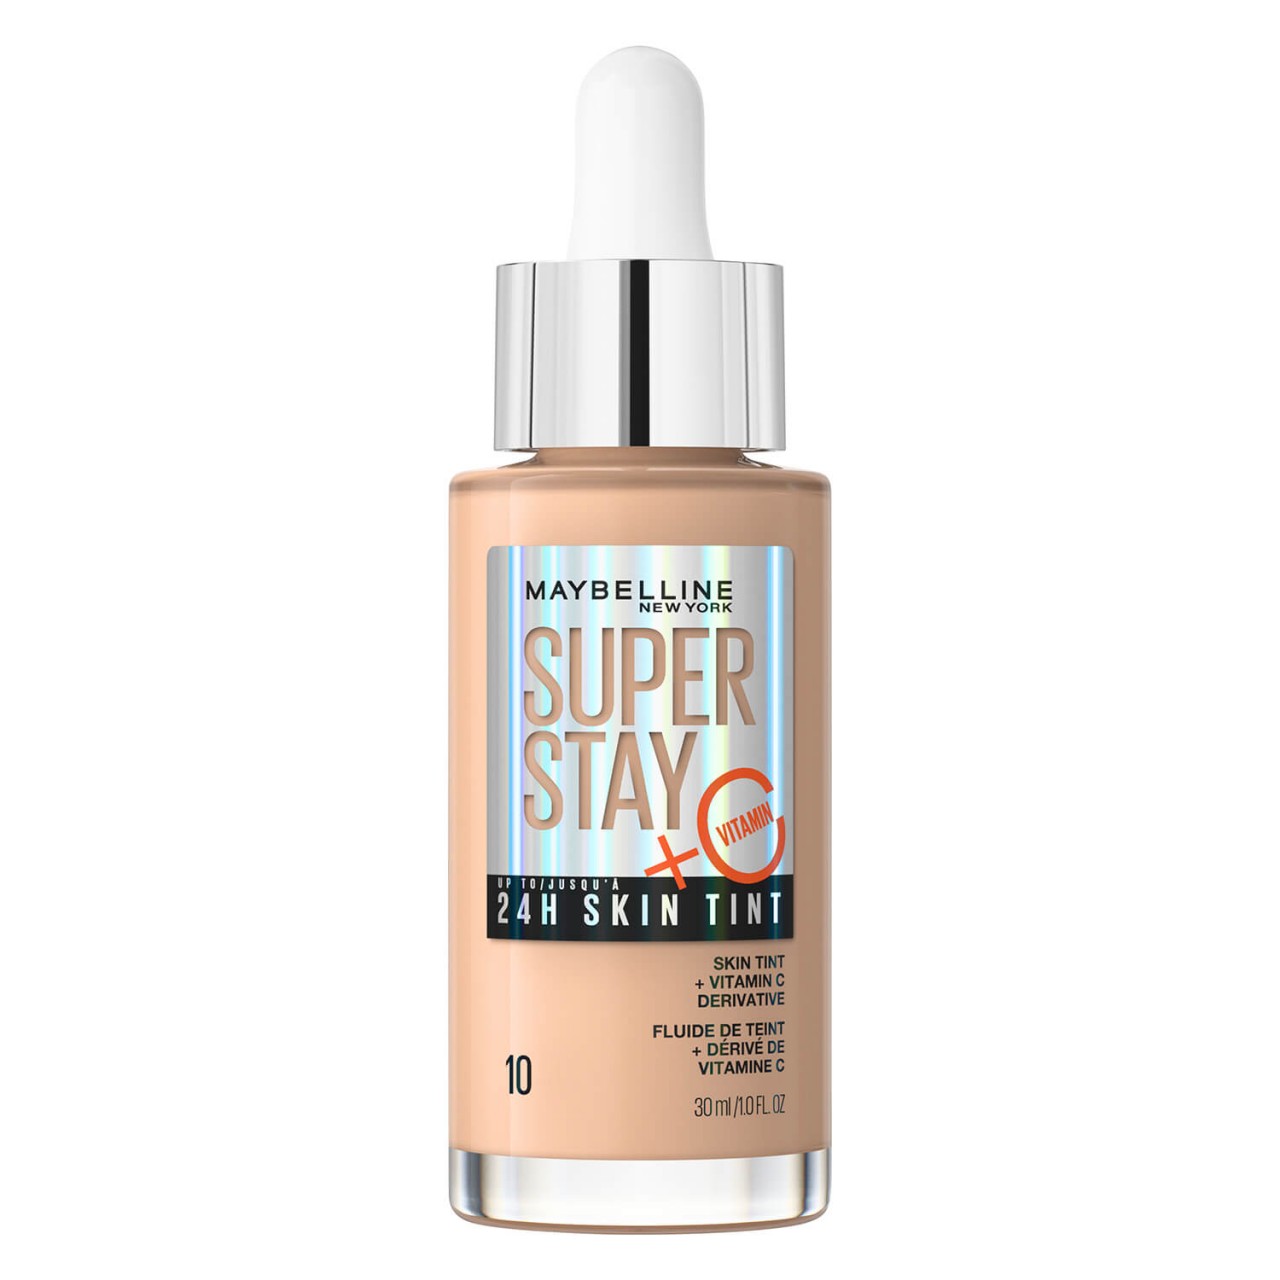 Maybelline NY Teint - Super Stay 24H Skin Tint Ivory 10 von Maybelline New York